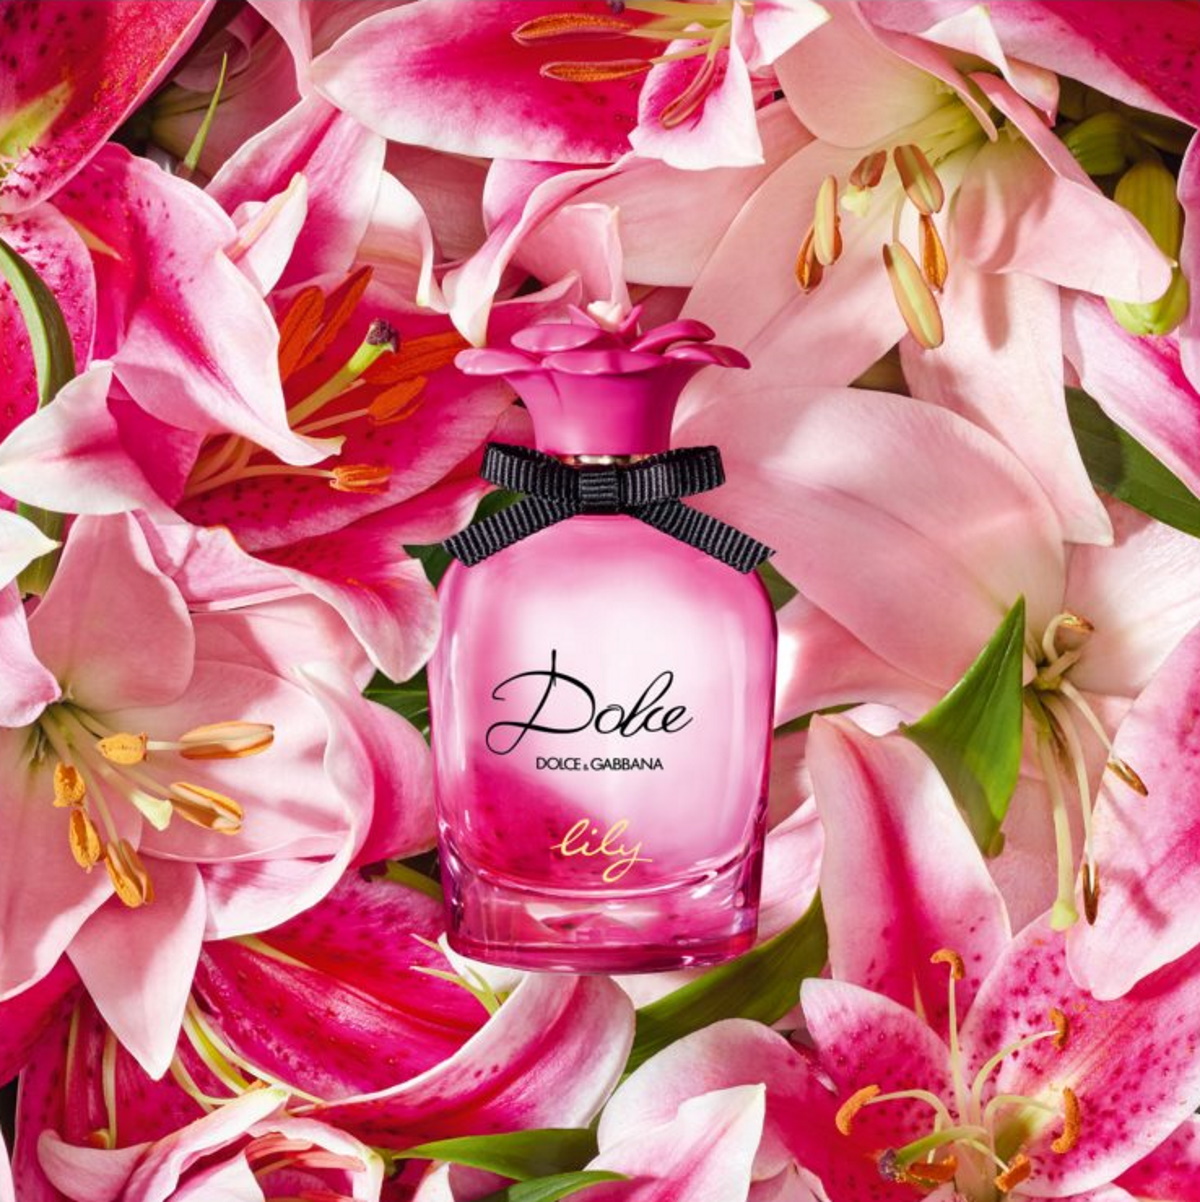 Dolce & Gabbana - Dolce Lily le nouveau parfum printemps été 2022